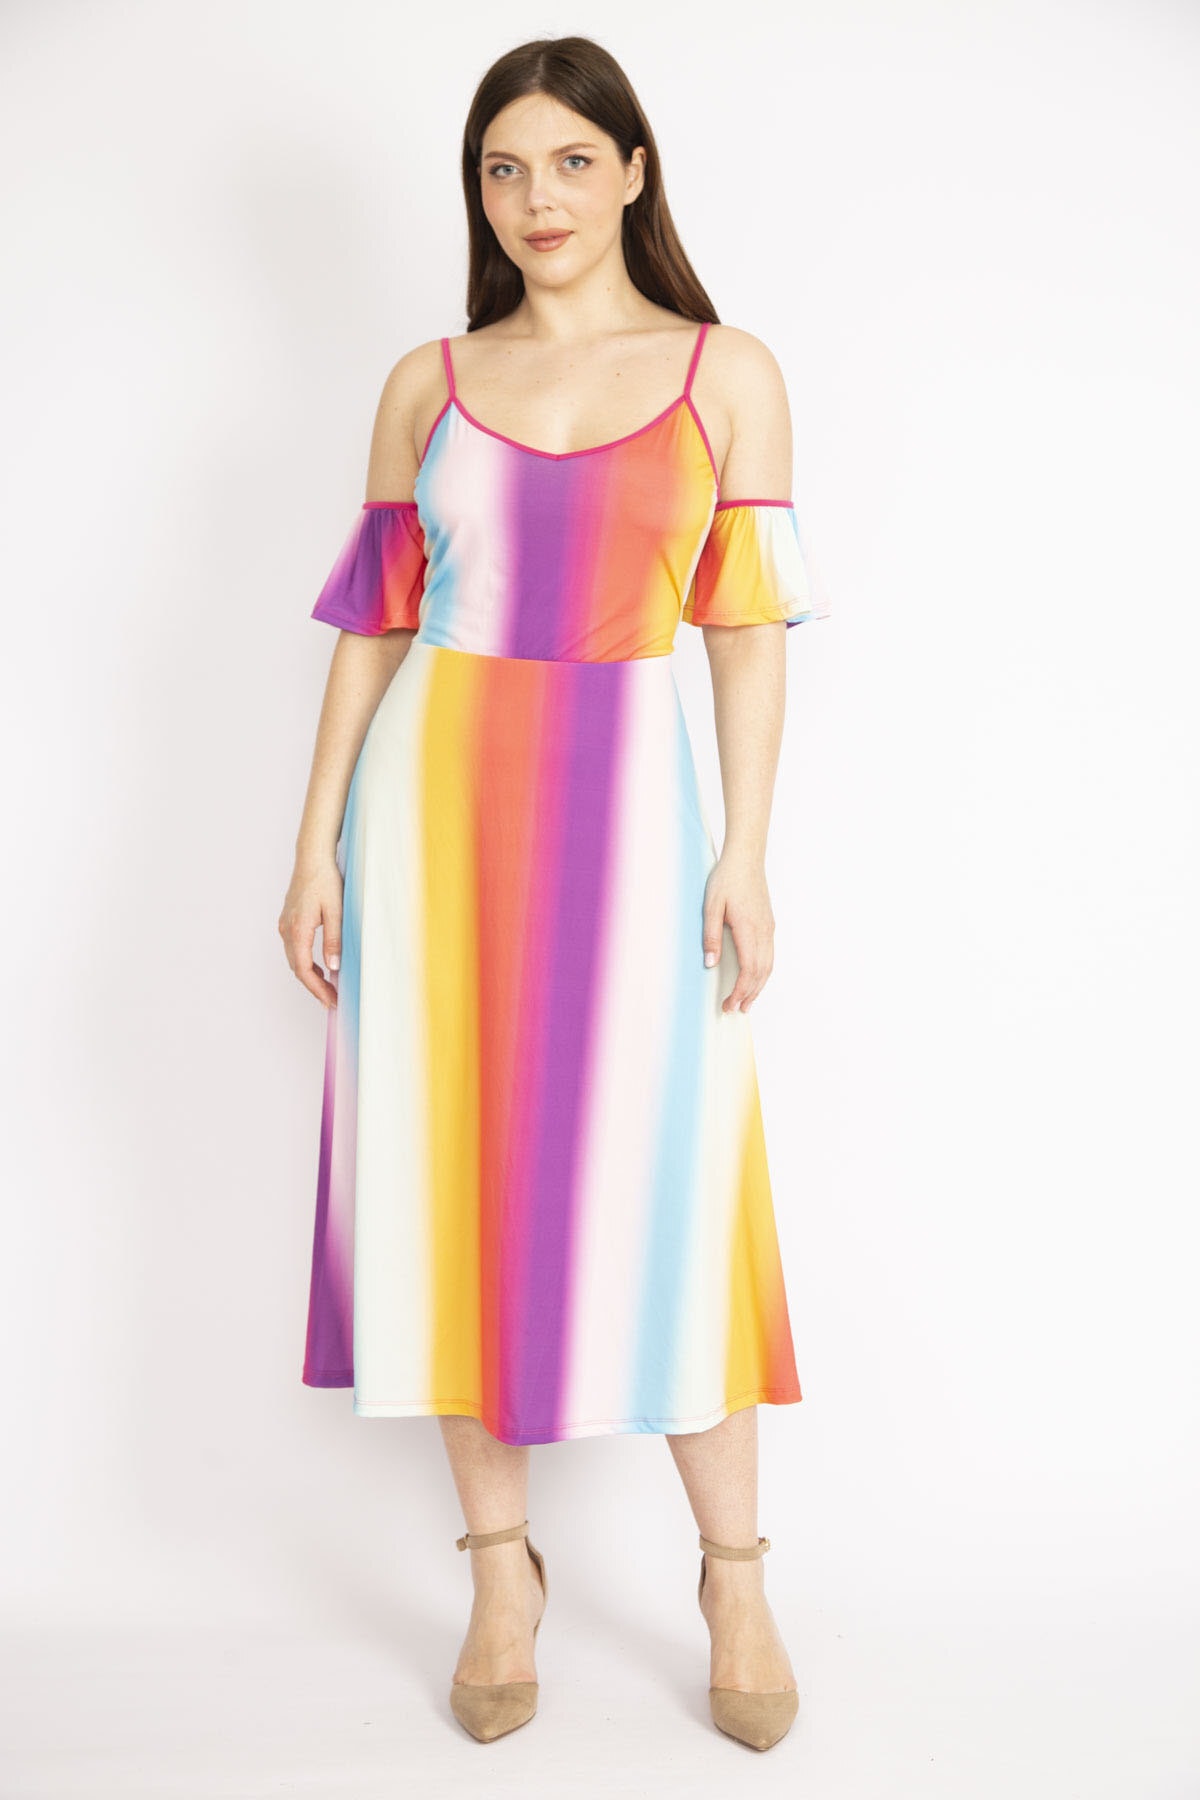 Levně Şans Women's Colorful Plus Size Collar Elastic Strap Adjustable Length Colorful Dress